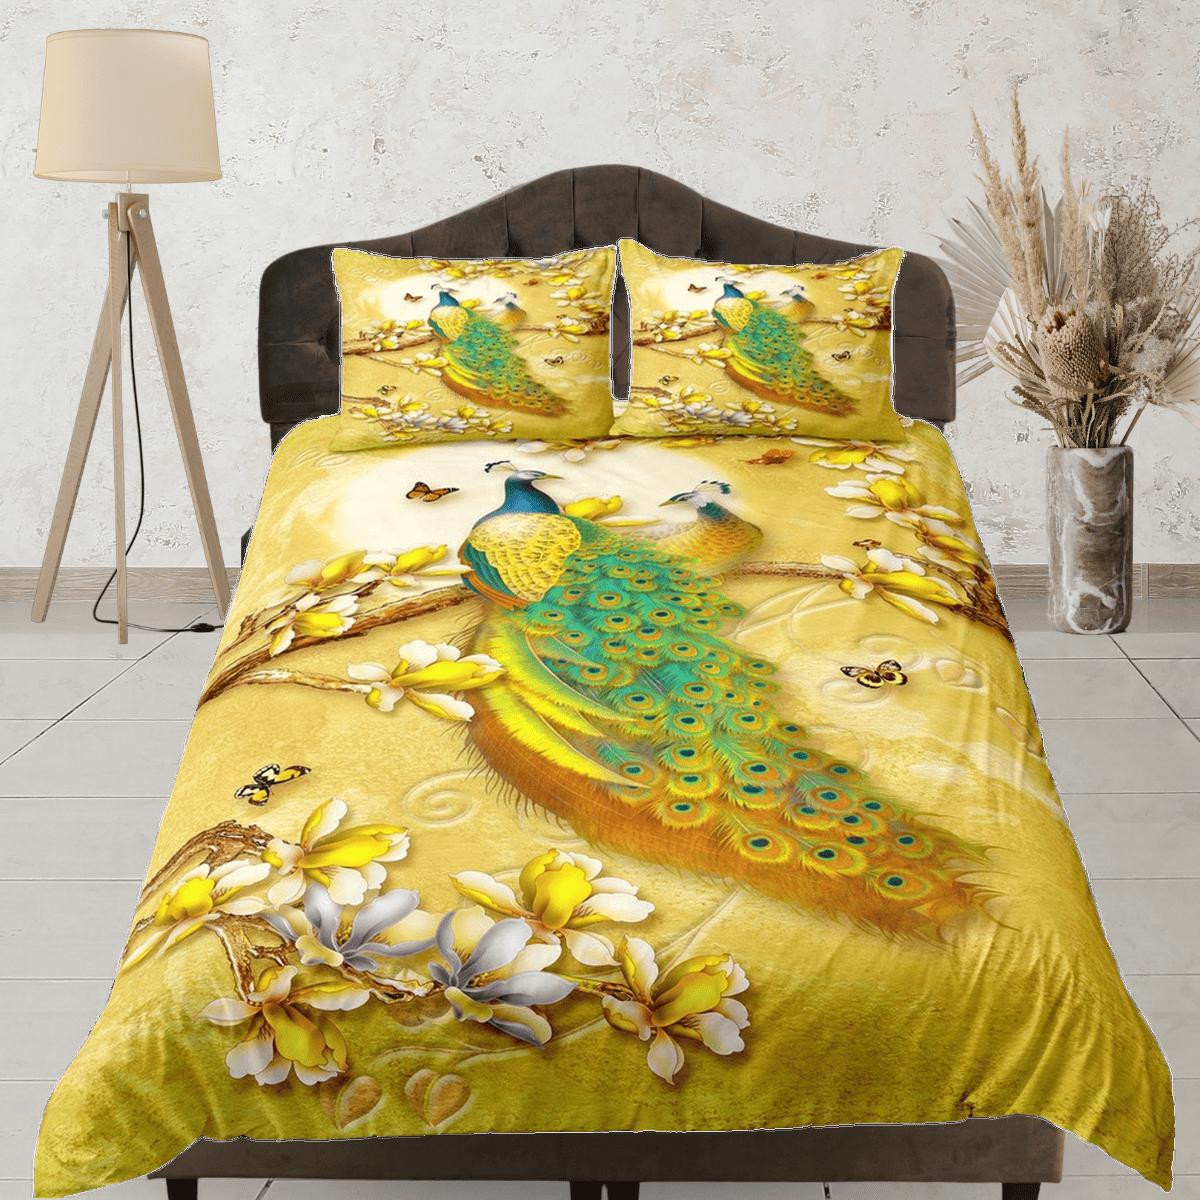 daintyduvet Golden bedding with peacock decor aesthetic duvet cover set full, luxury bedding set queen, king, boho duvet, designer bedding, maximalist